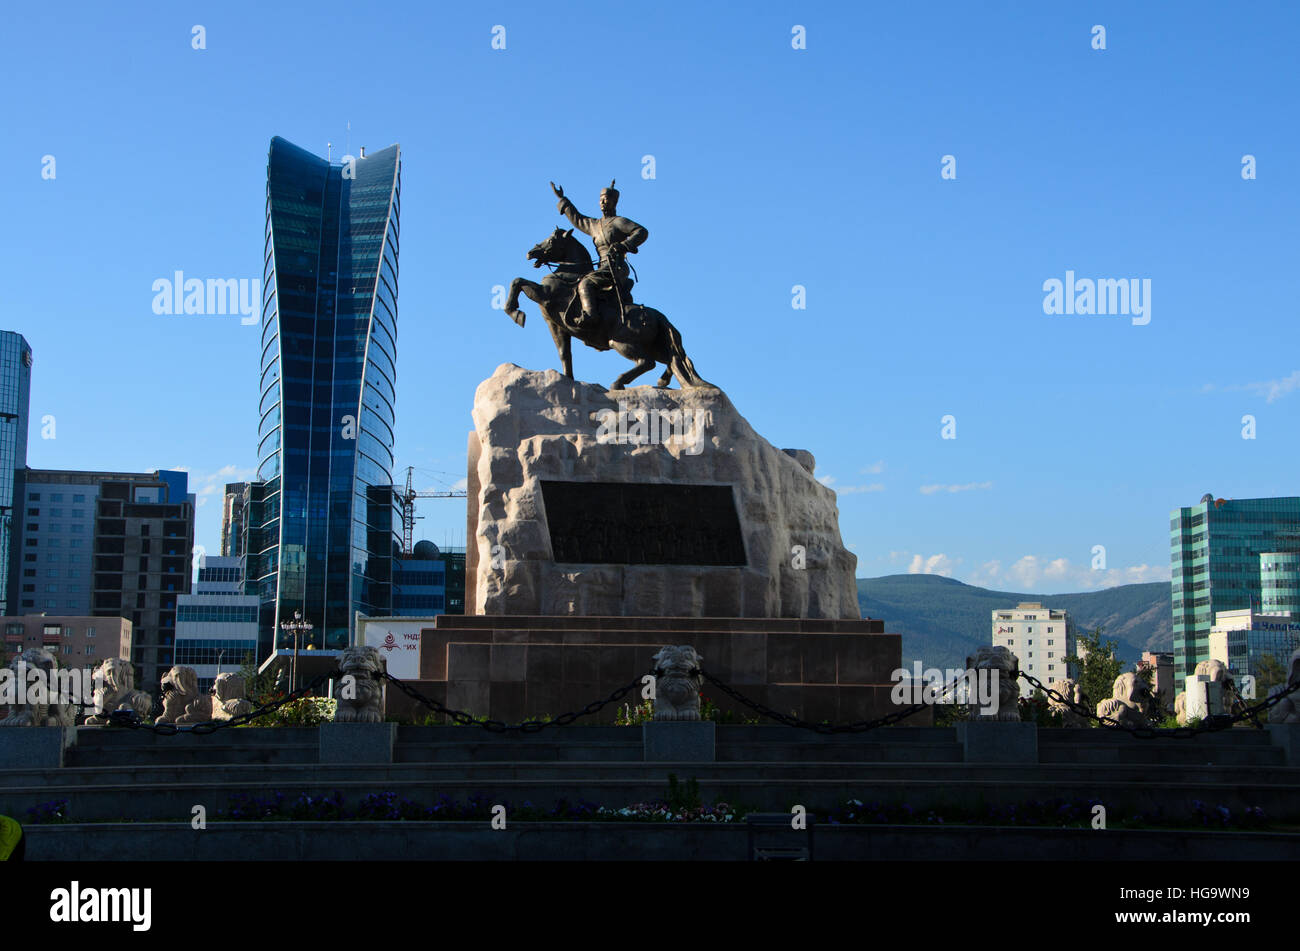 Une statue de bronze de Sükhbaatar à califourchon sur son cheval, le héros de la révolution. Banque D'Images